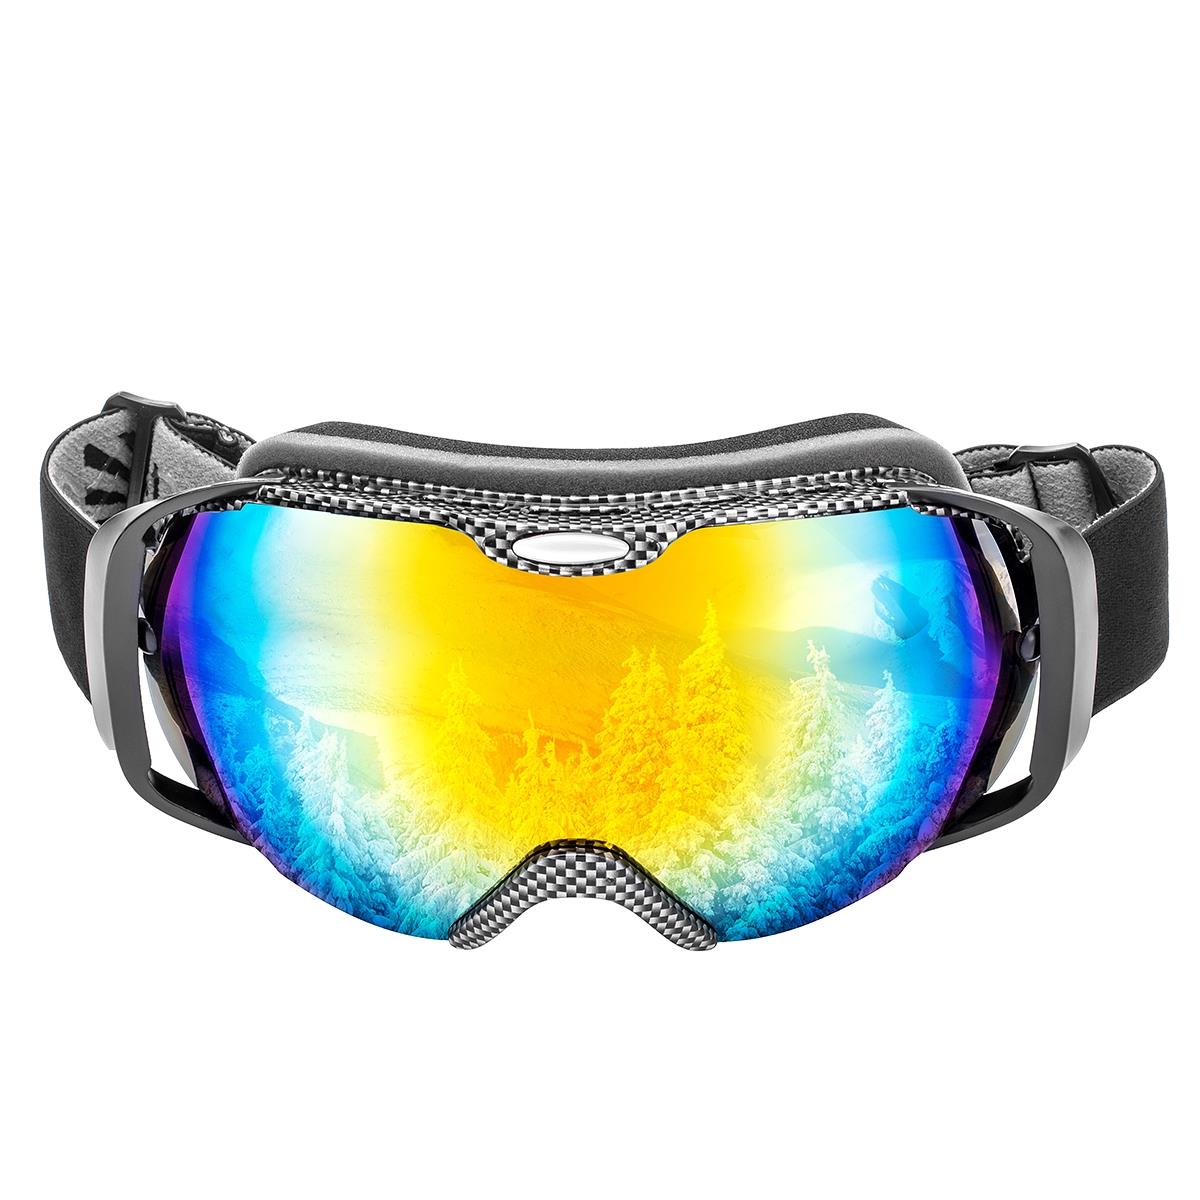 Очки горнолыжные HS-HX-012 Helios очки спортивные